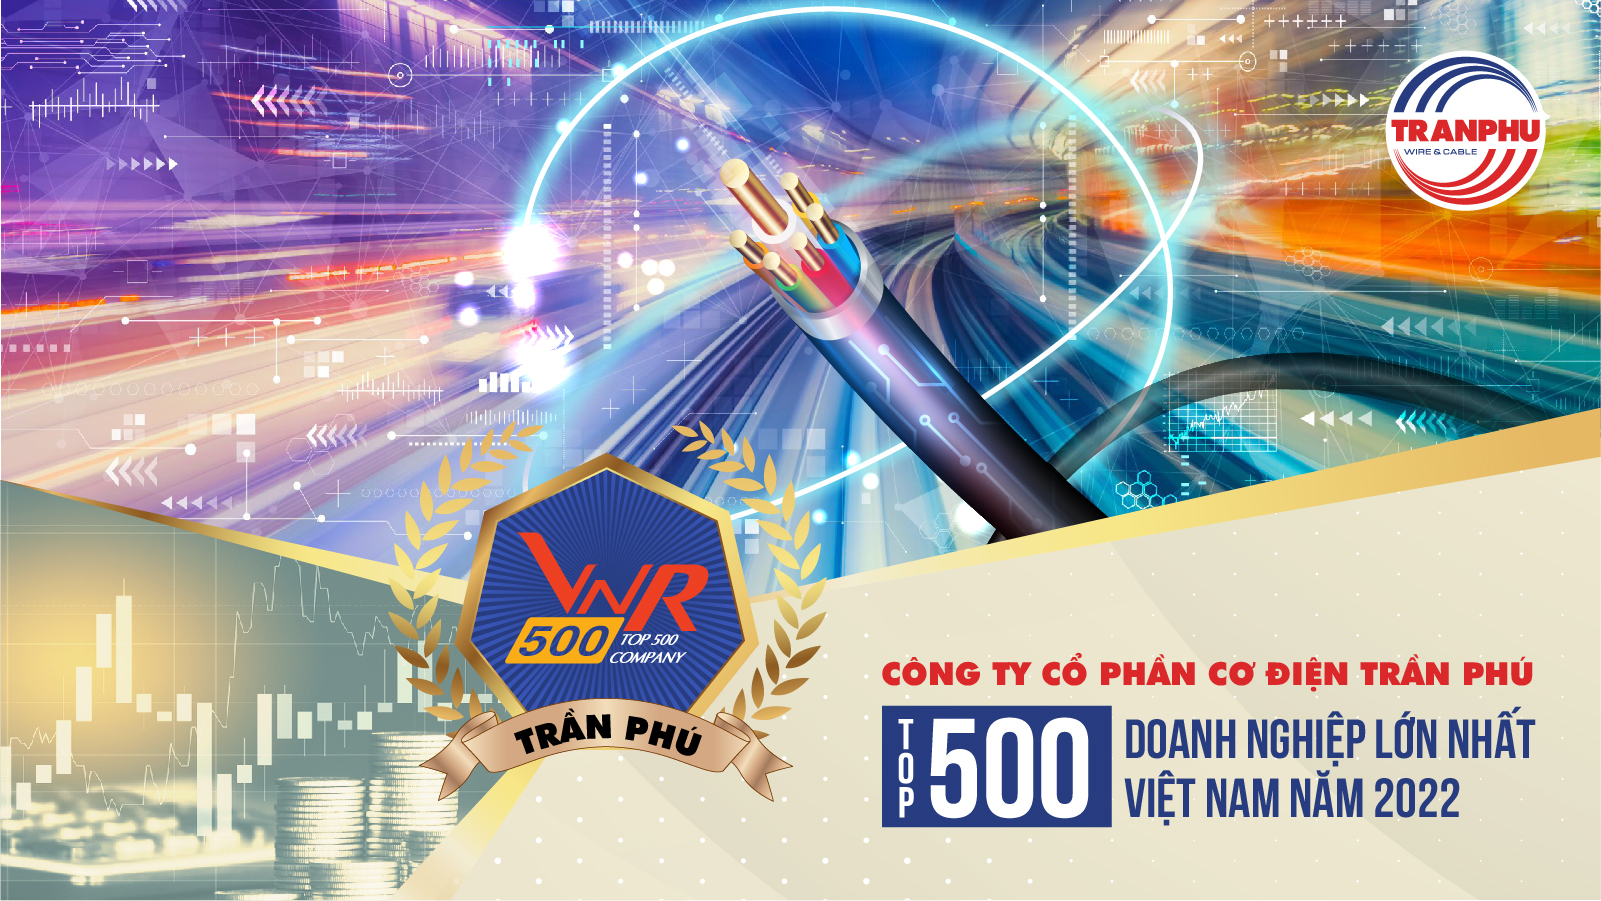 Công ty cổ phần cơ điện Trần Phú tiếp tục được vinh danh trong VNR500